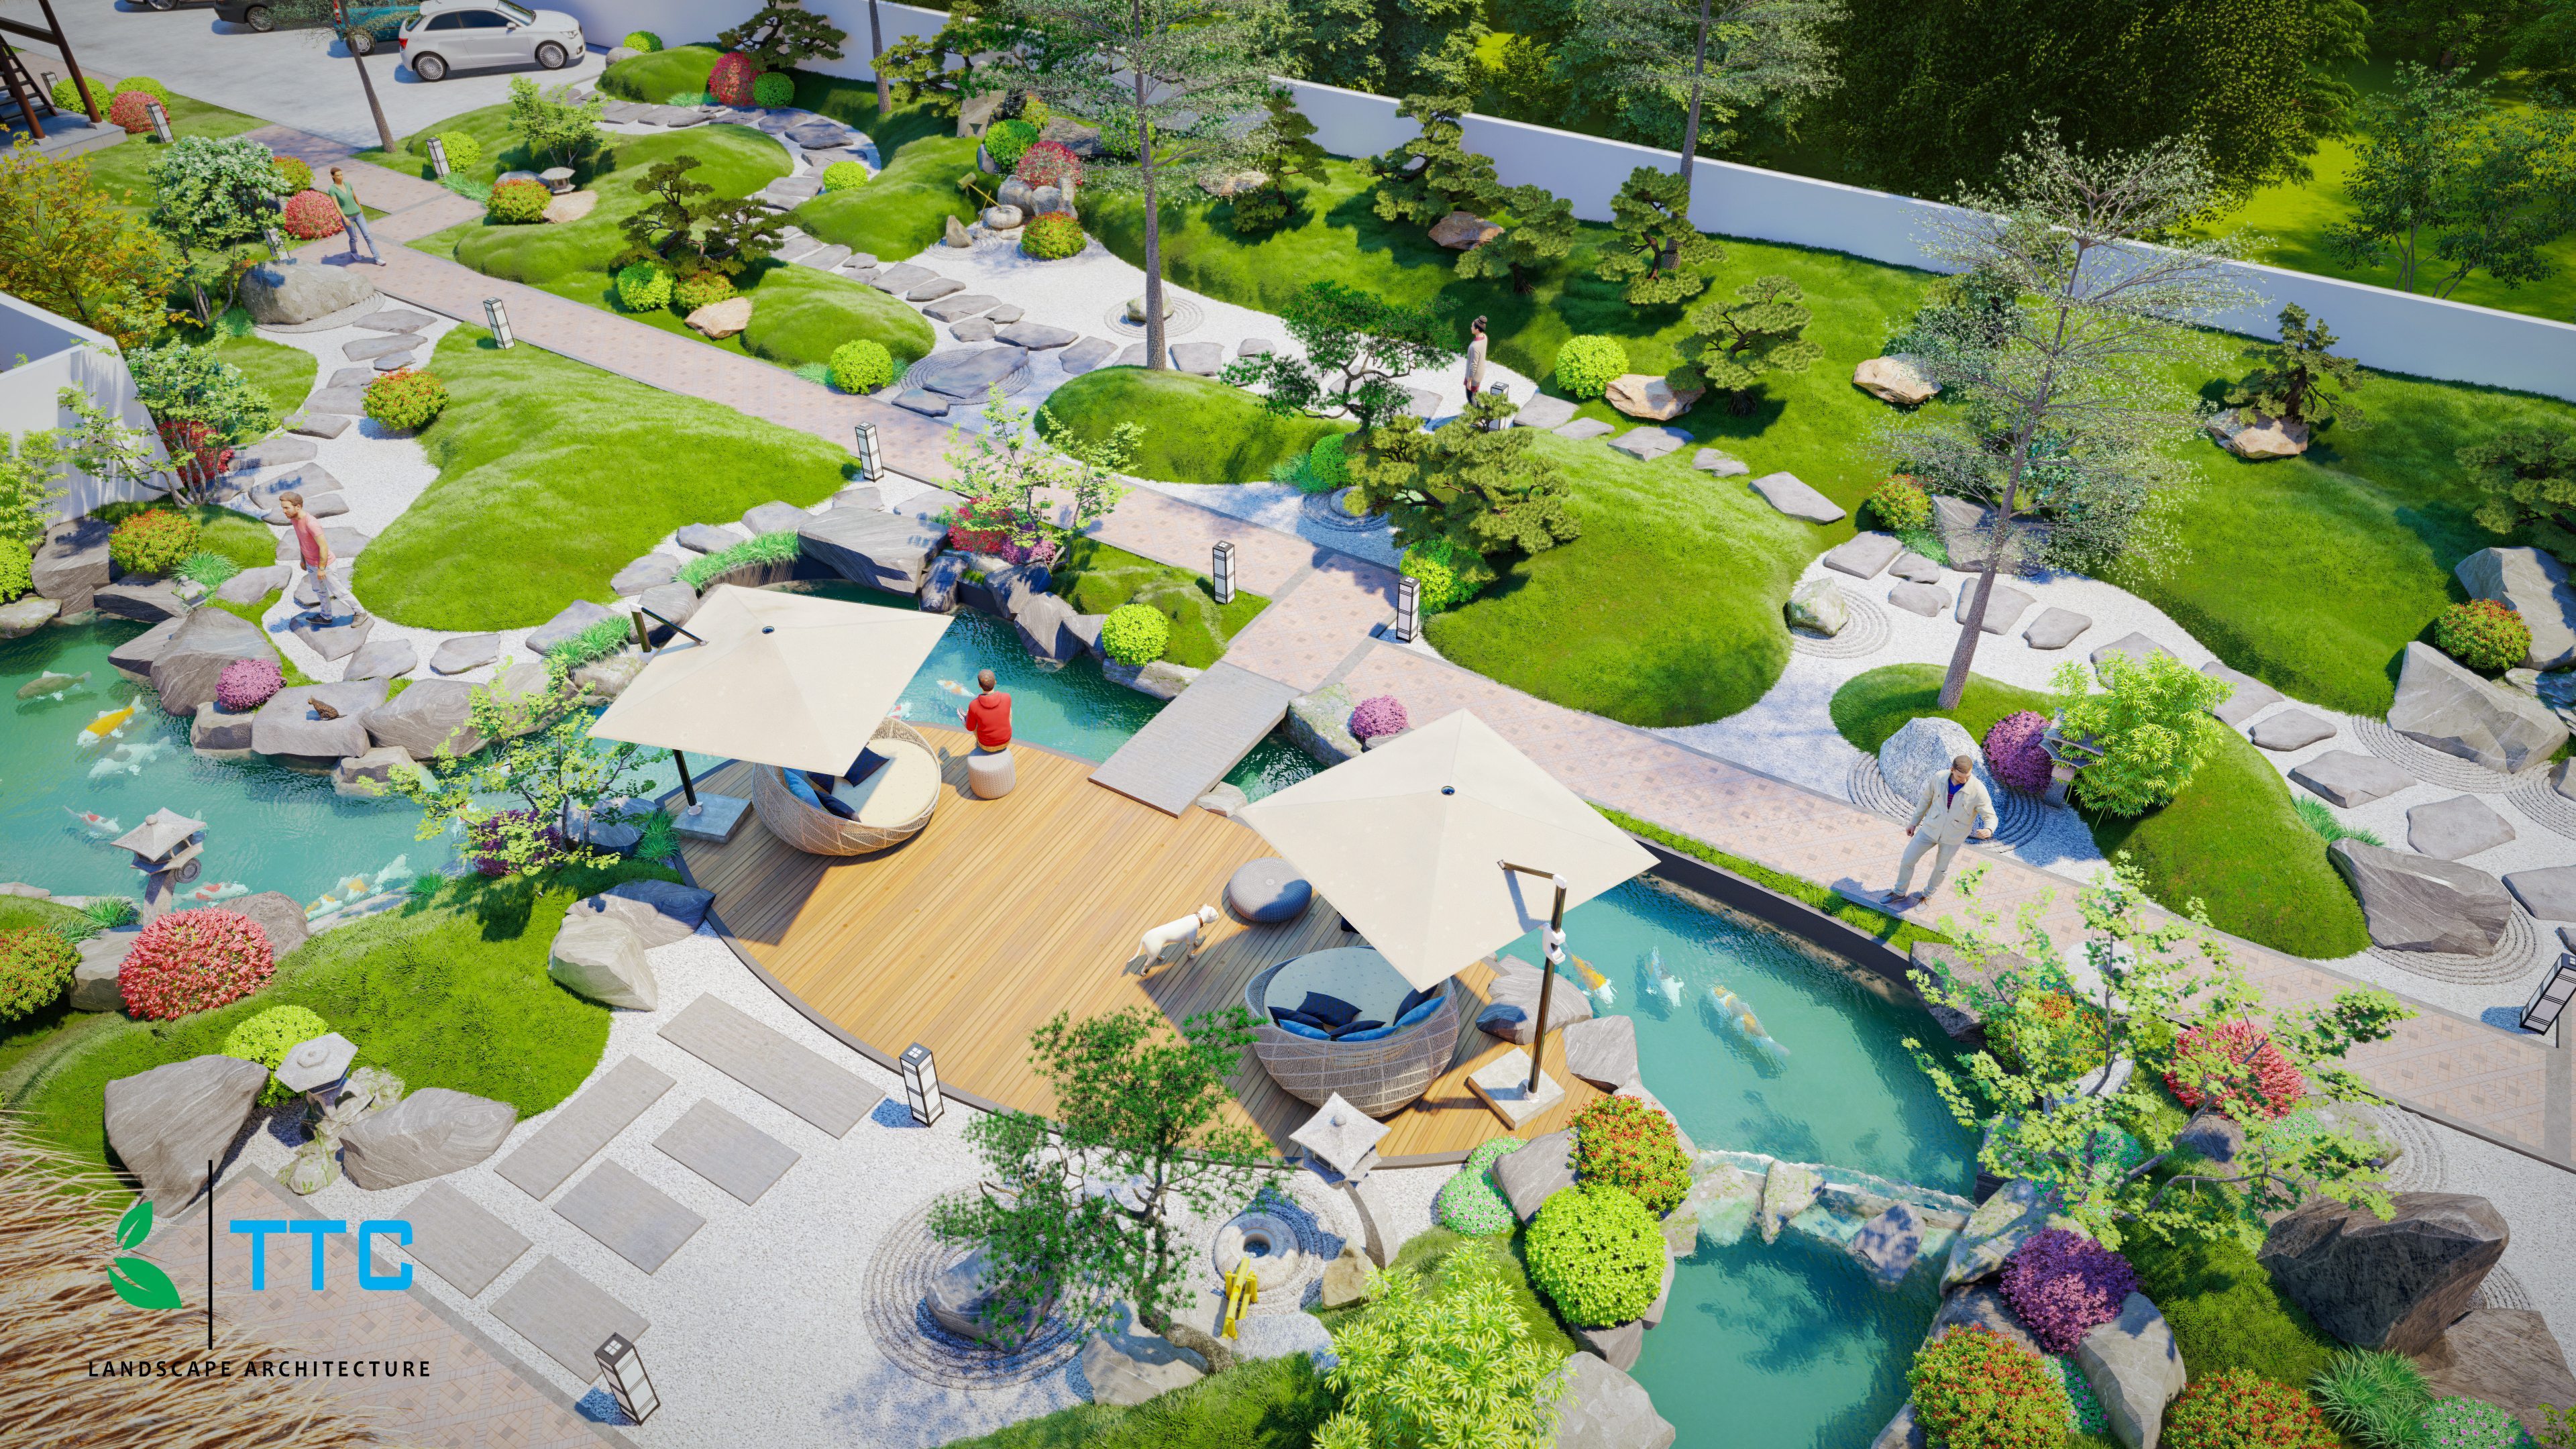 Thiết kế Resort tại Đắk Lắk SÂN VƯỜN NHẬT BẢN ĐAKLAK 1647099455 8